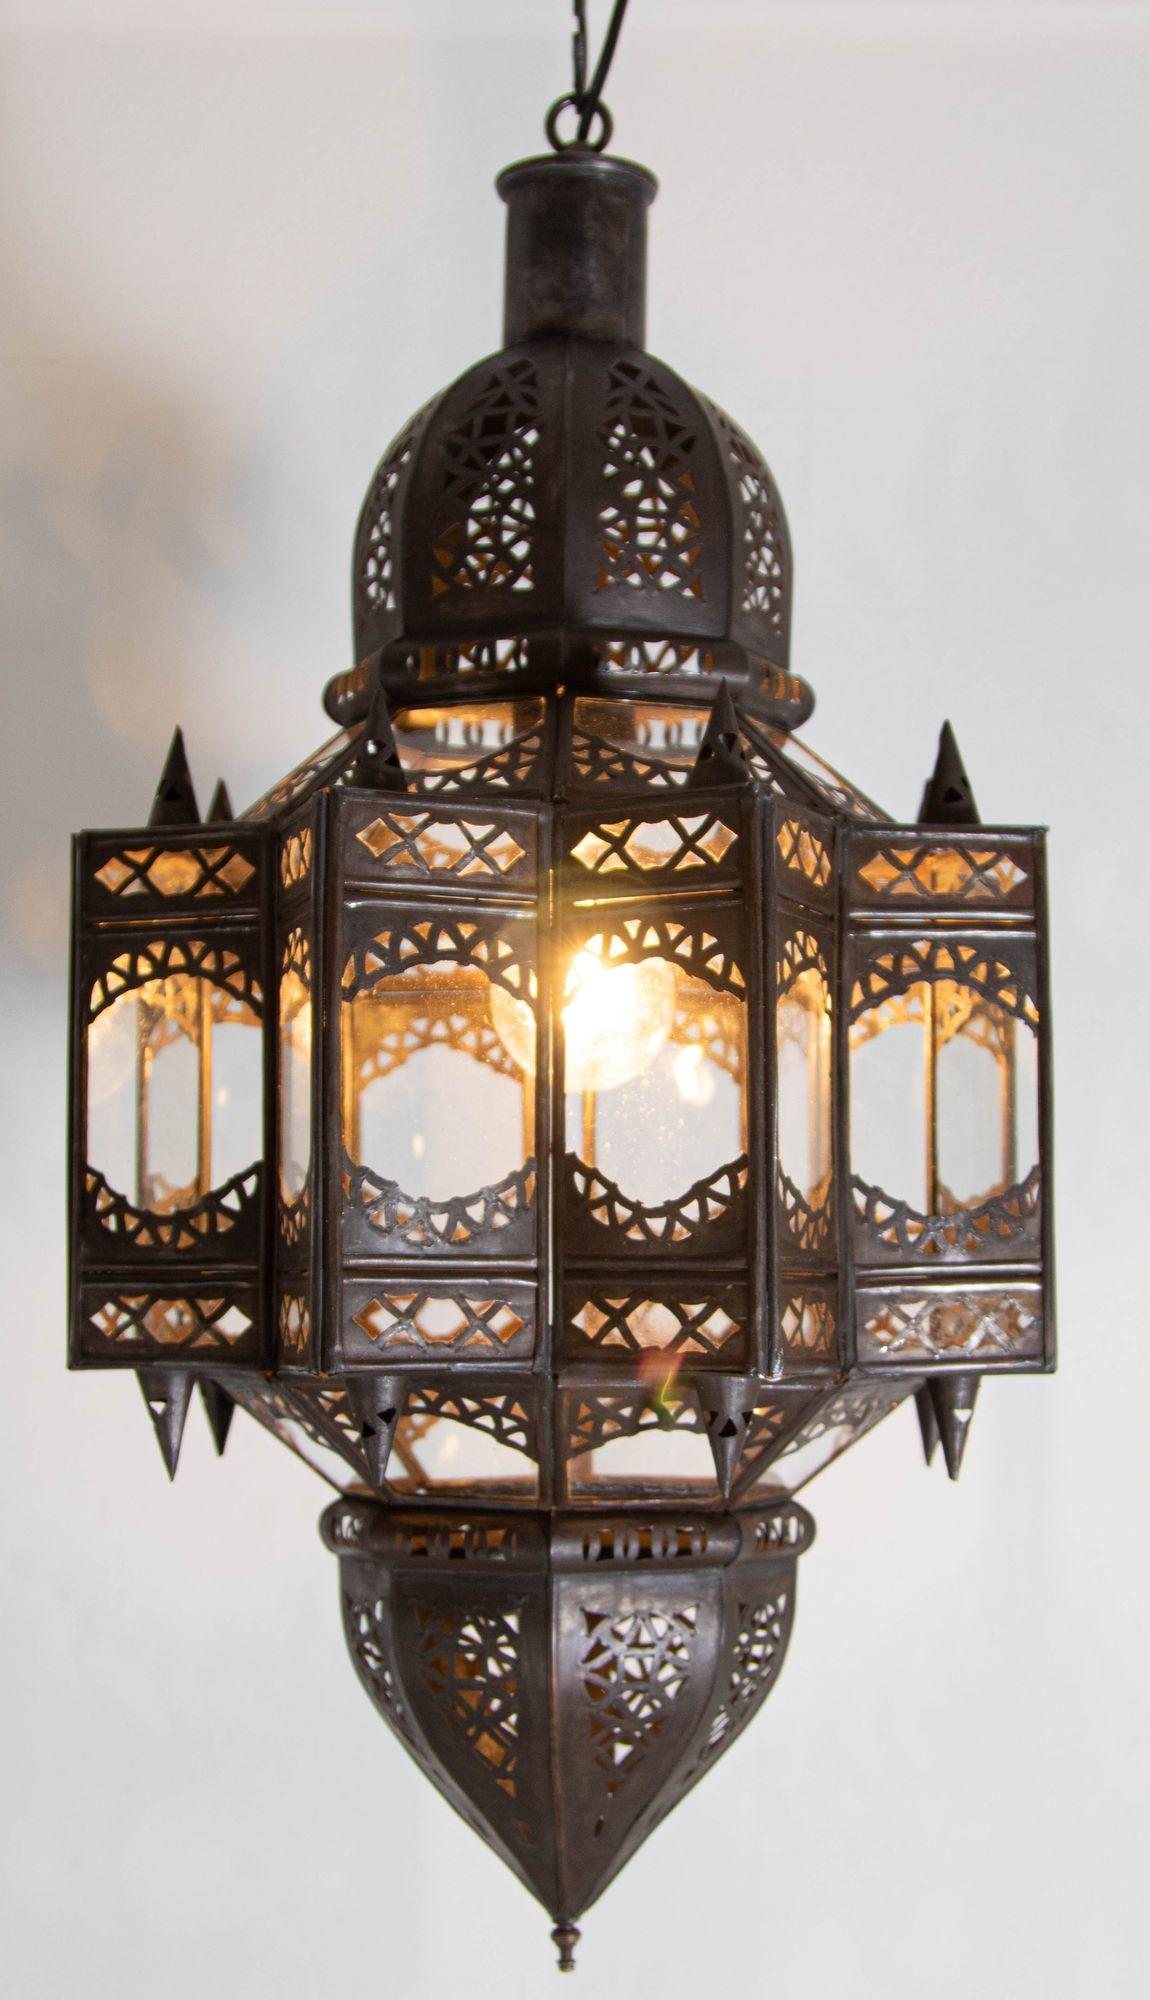 Vintage marokkanischen maurischen Stern Form in klarem Glas und Metall-Laterne.
Sternförmiger Laternenanhänger aus Klarglas, handgefertigt von marokkanischen Kunsthandwerkern in Marrakech.
Das Metall ist mit floralen und geometrischen